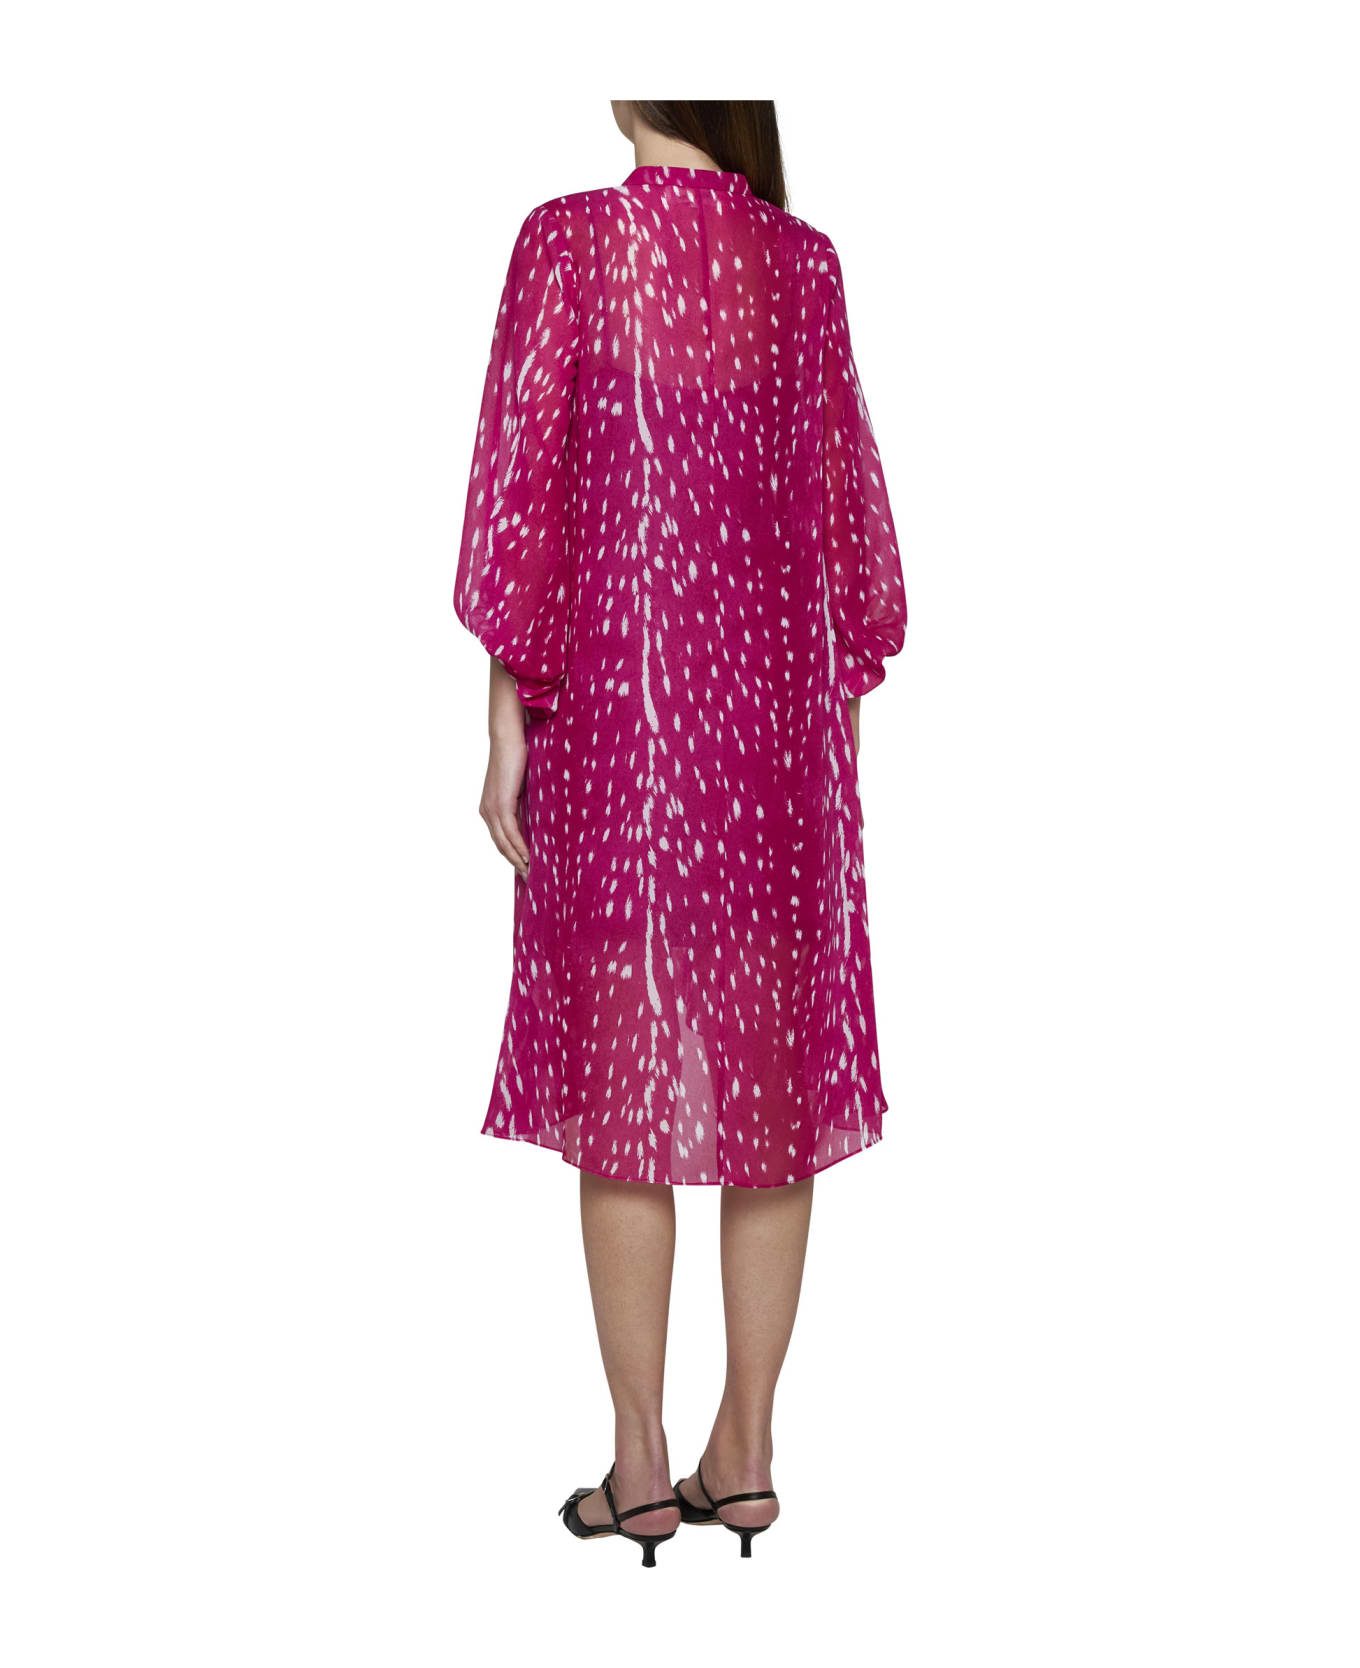 Diane Von Furstenberg Dress - Fawn sangria